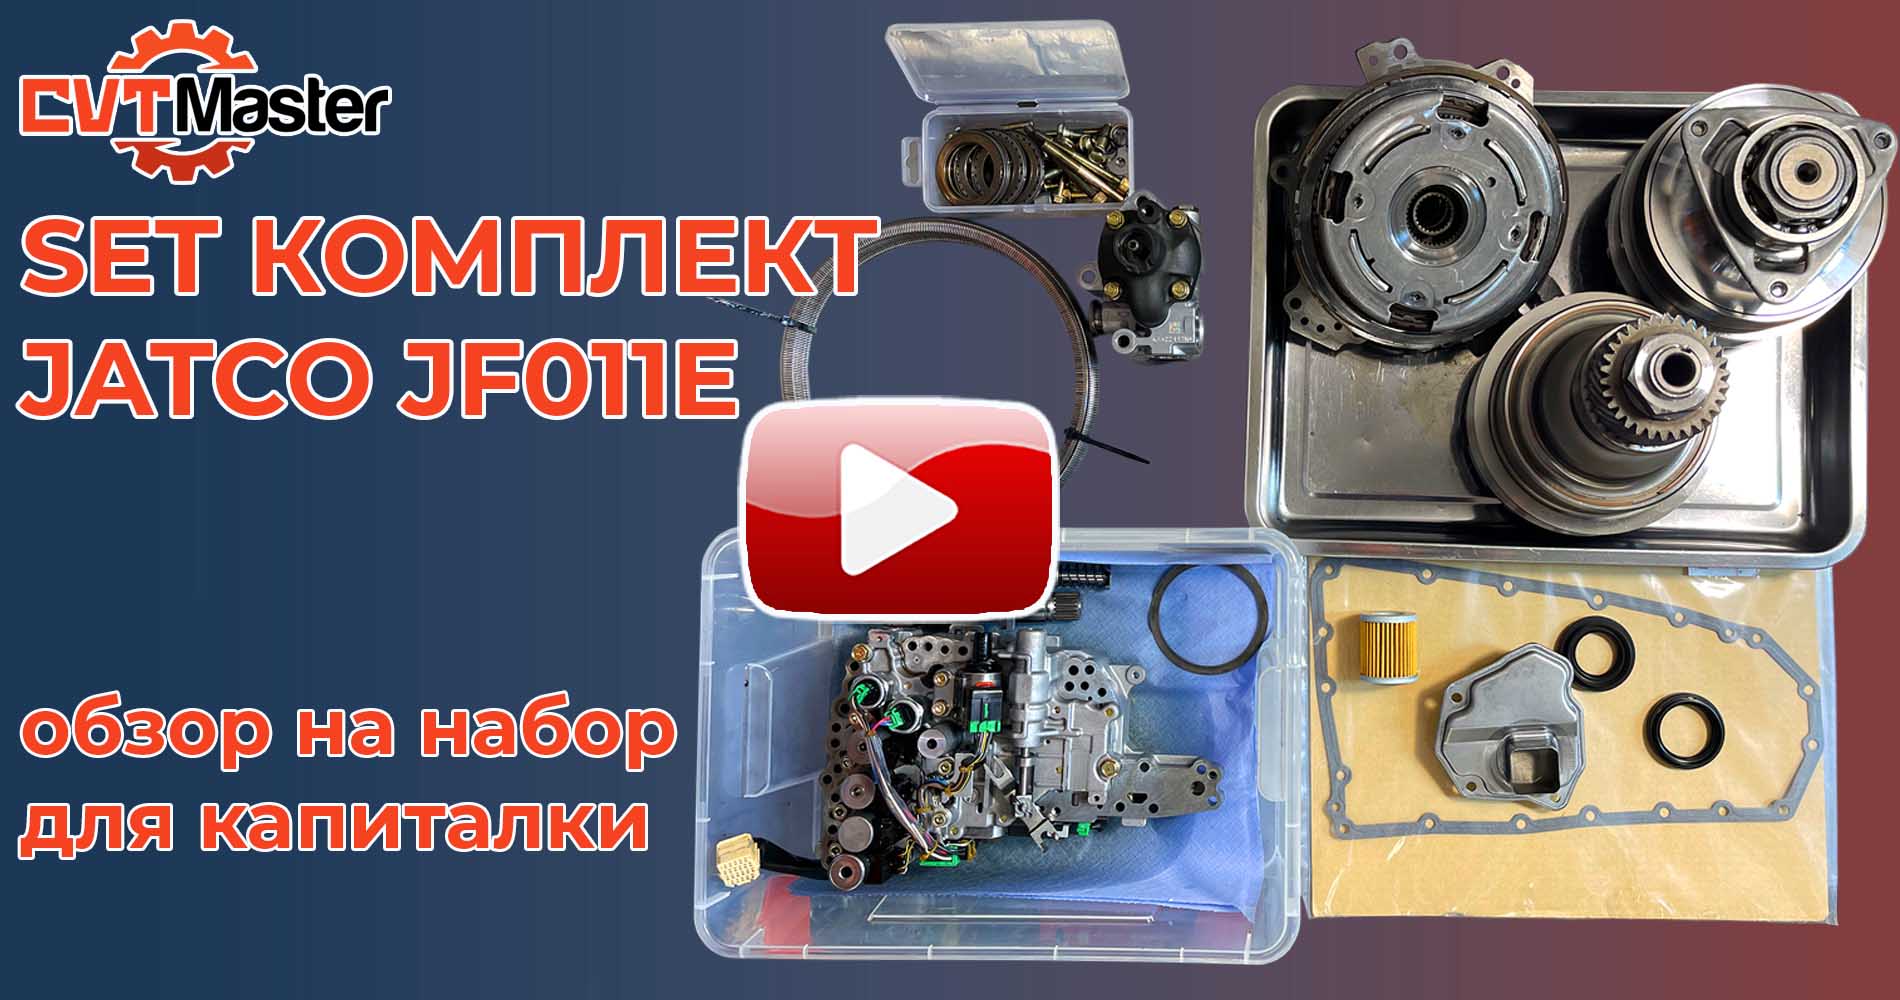 Видеообзор на набор для капитальног ремонта вариатора JF011E